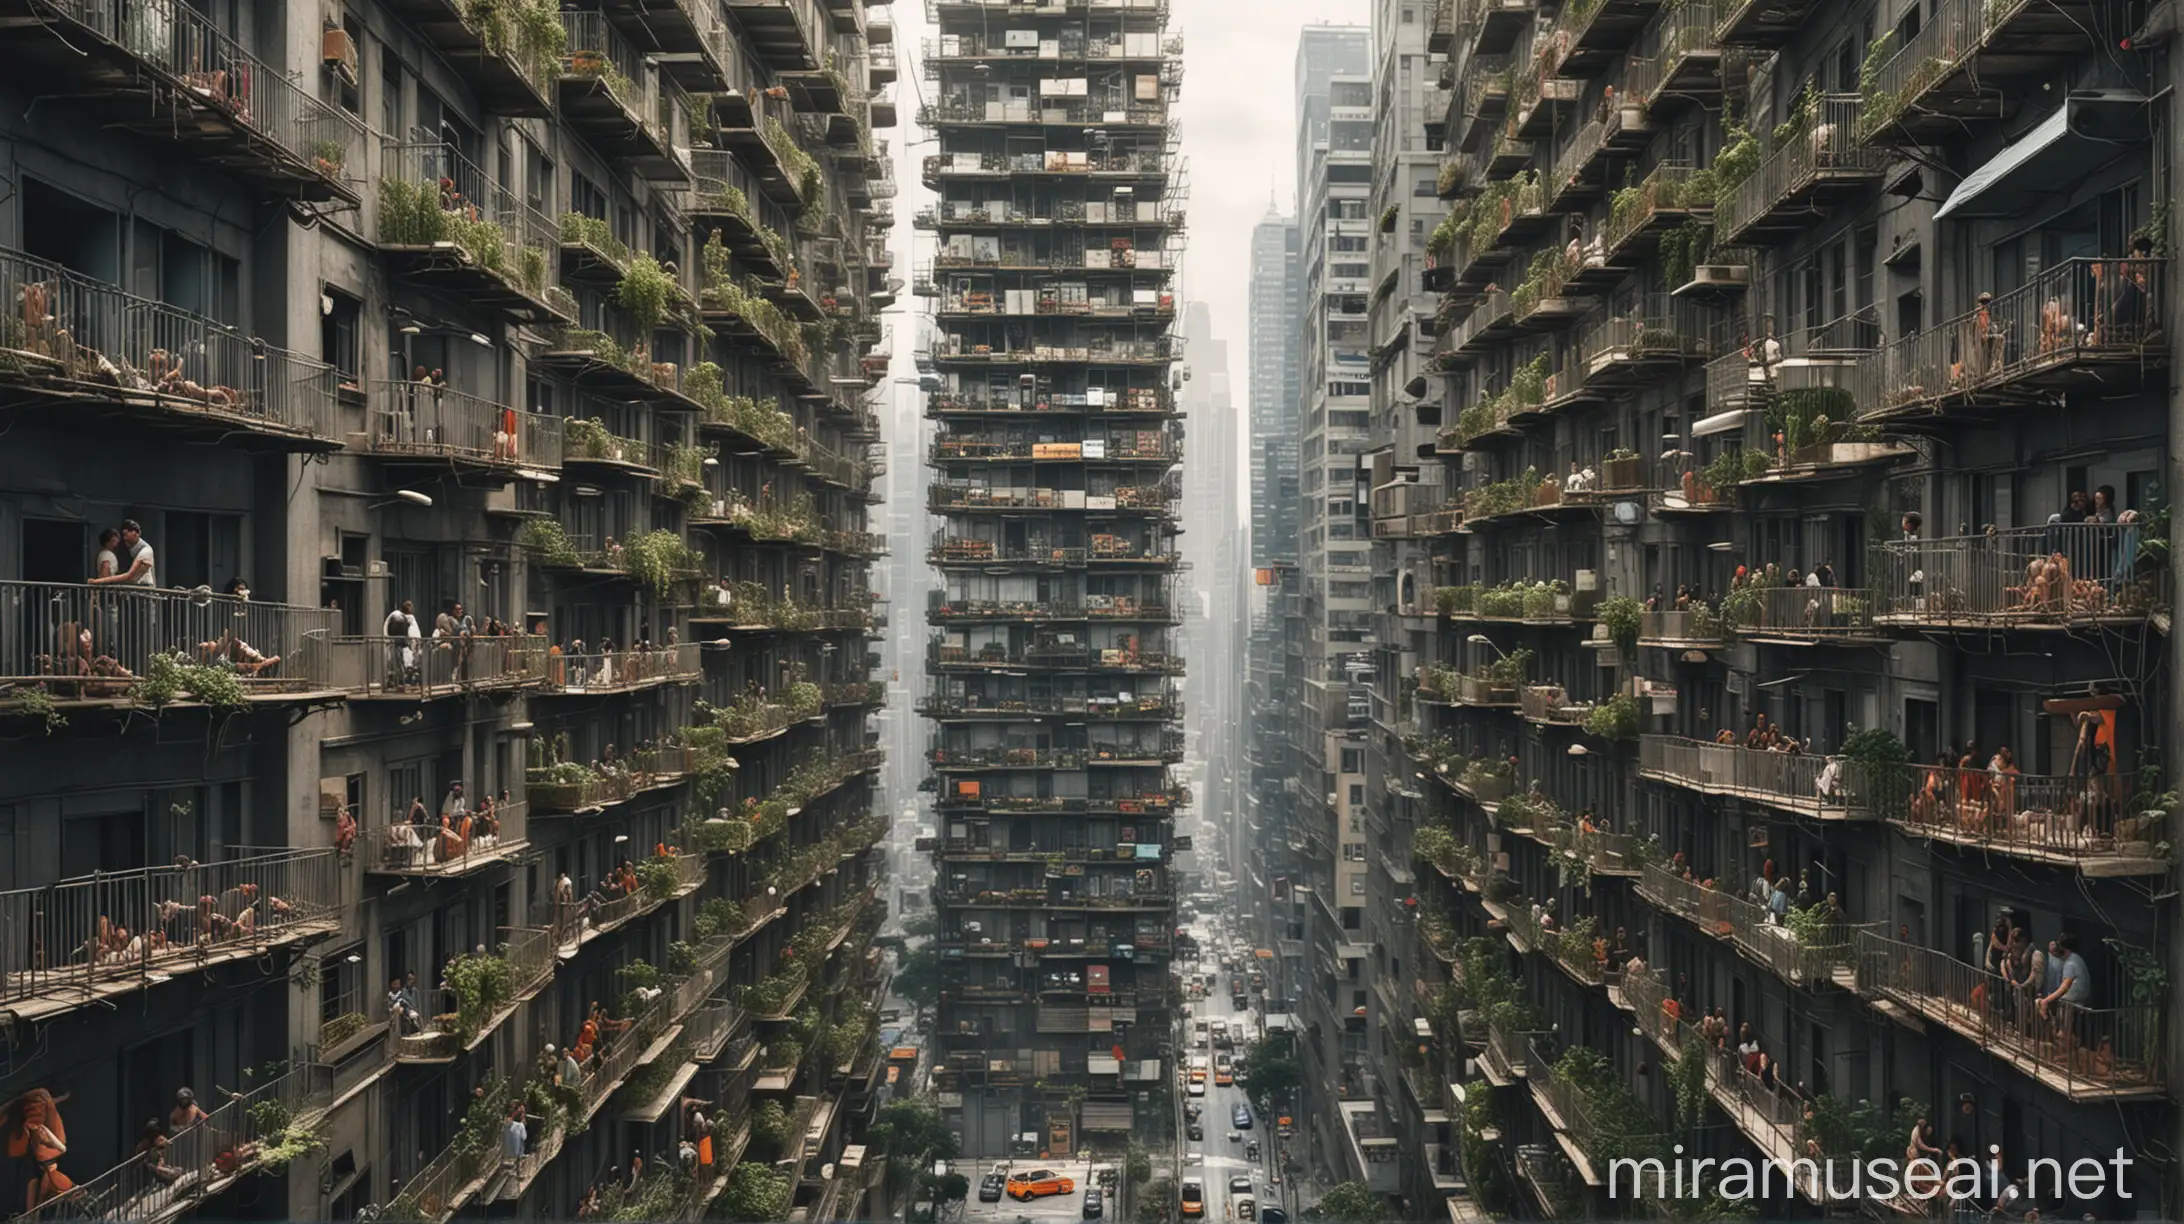 Urban Jungle Crowded Skyscraper Balconies in a Chaotic Cityscape